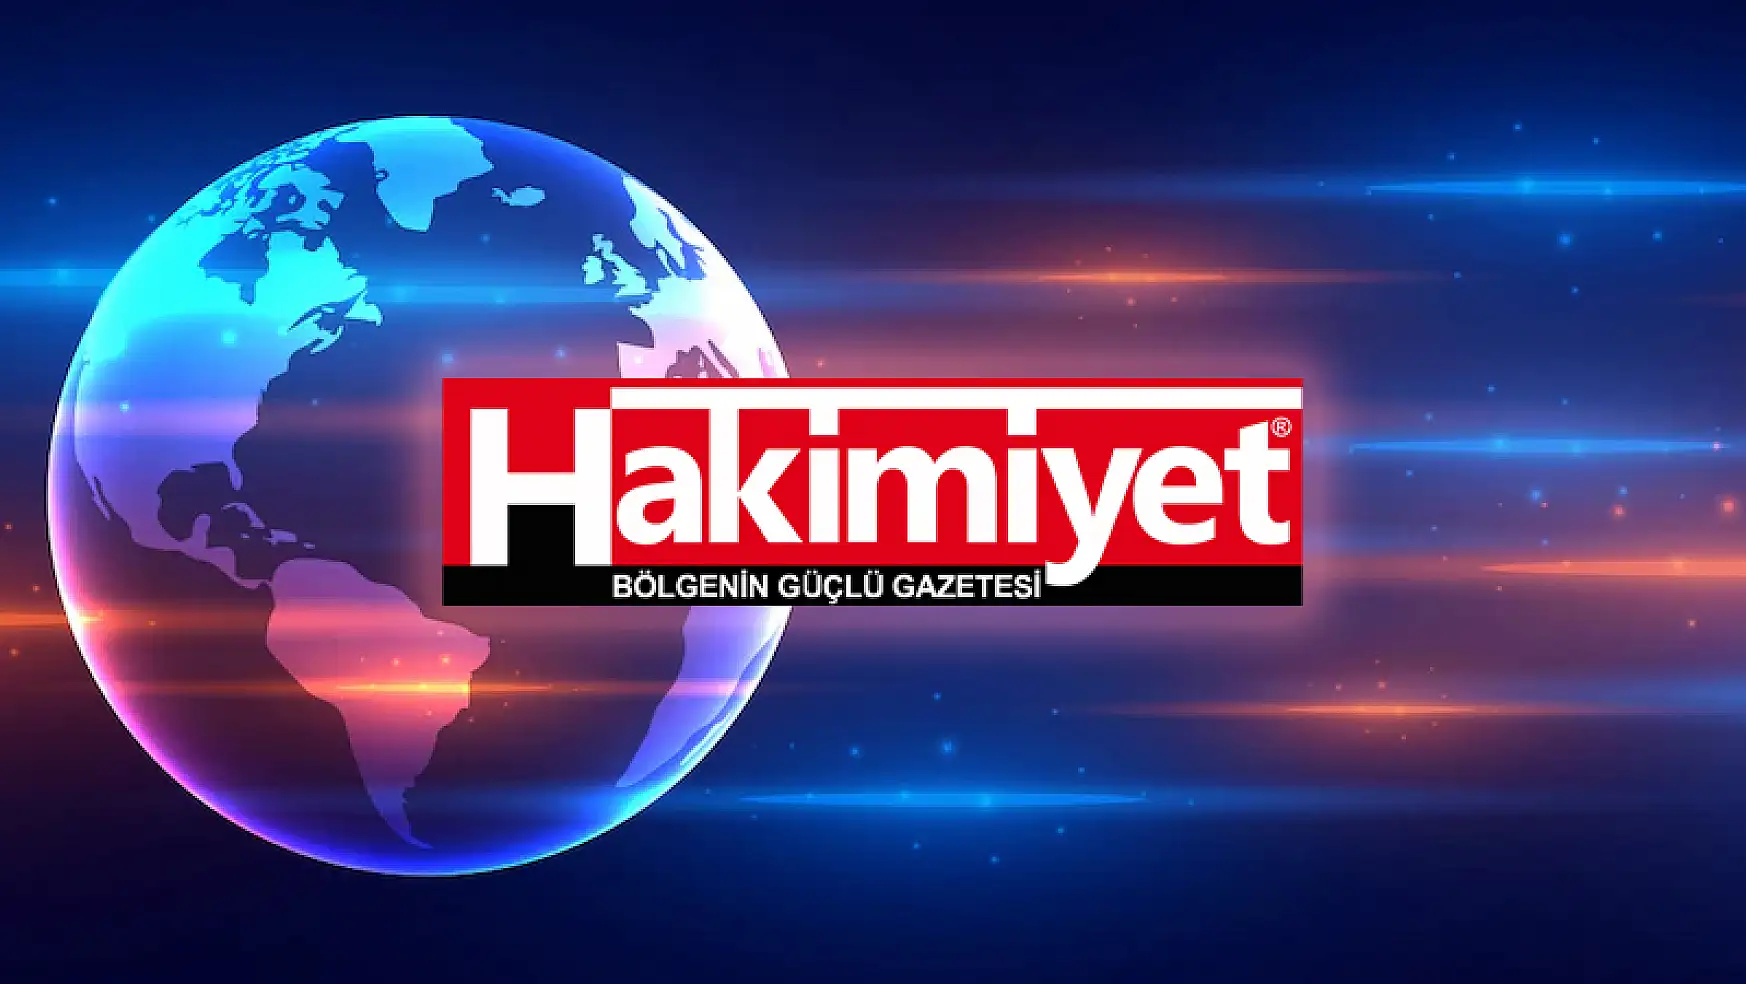 Beşiktaşlı futbolcu Kenan Karaman'da ödem ve gerilme tespit edildi